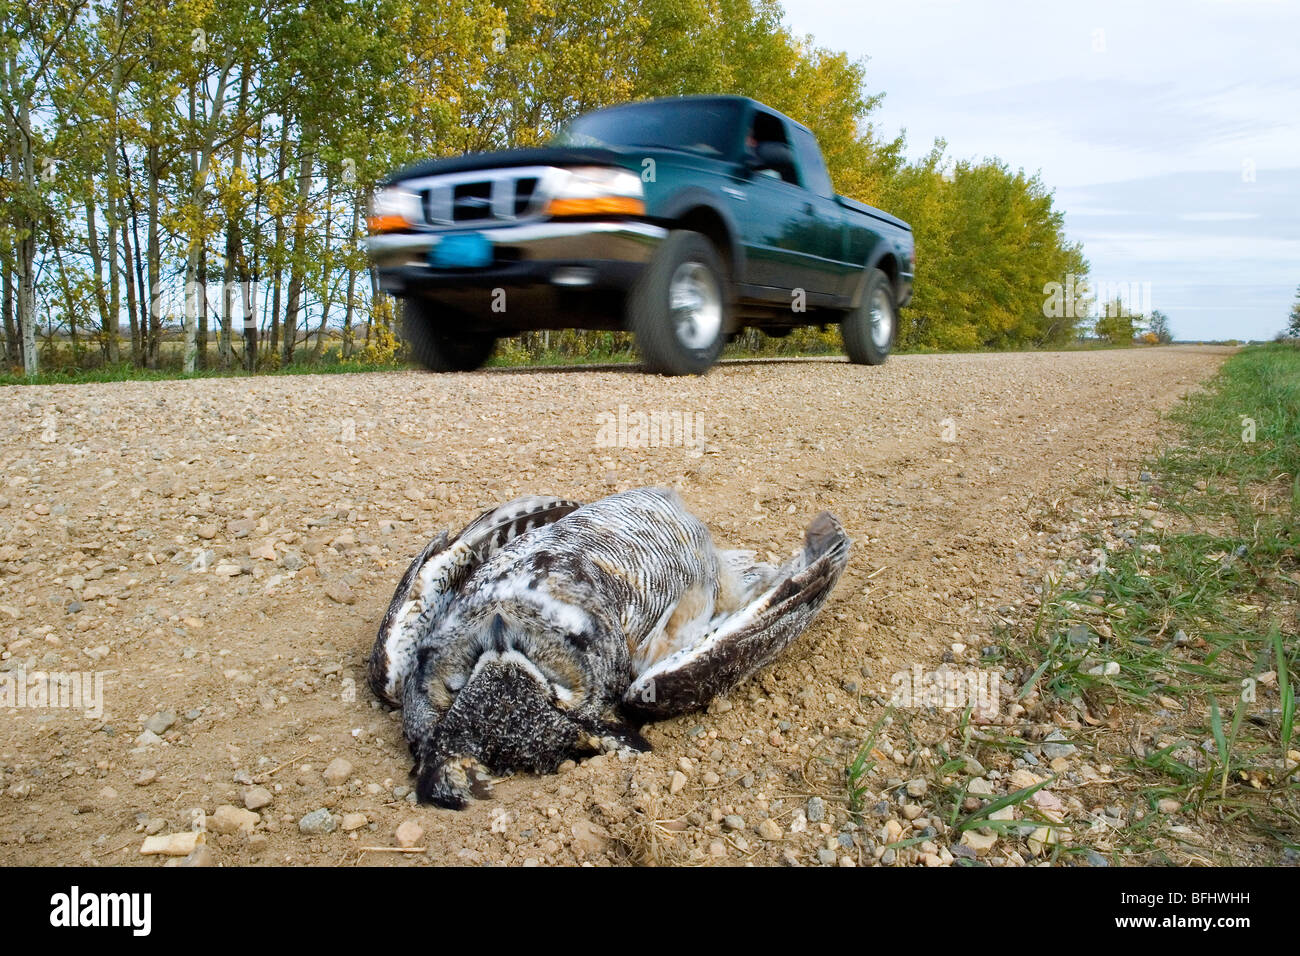 Carretera-muertos gran búho cornudo (Bubo virginianus), rural de Alberta, Canadá Foto de stock